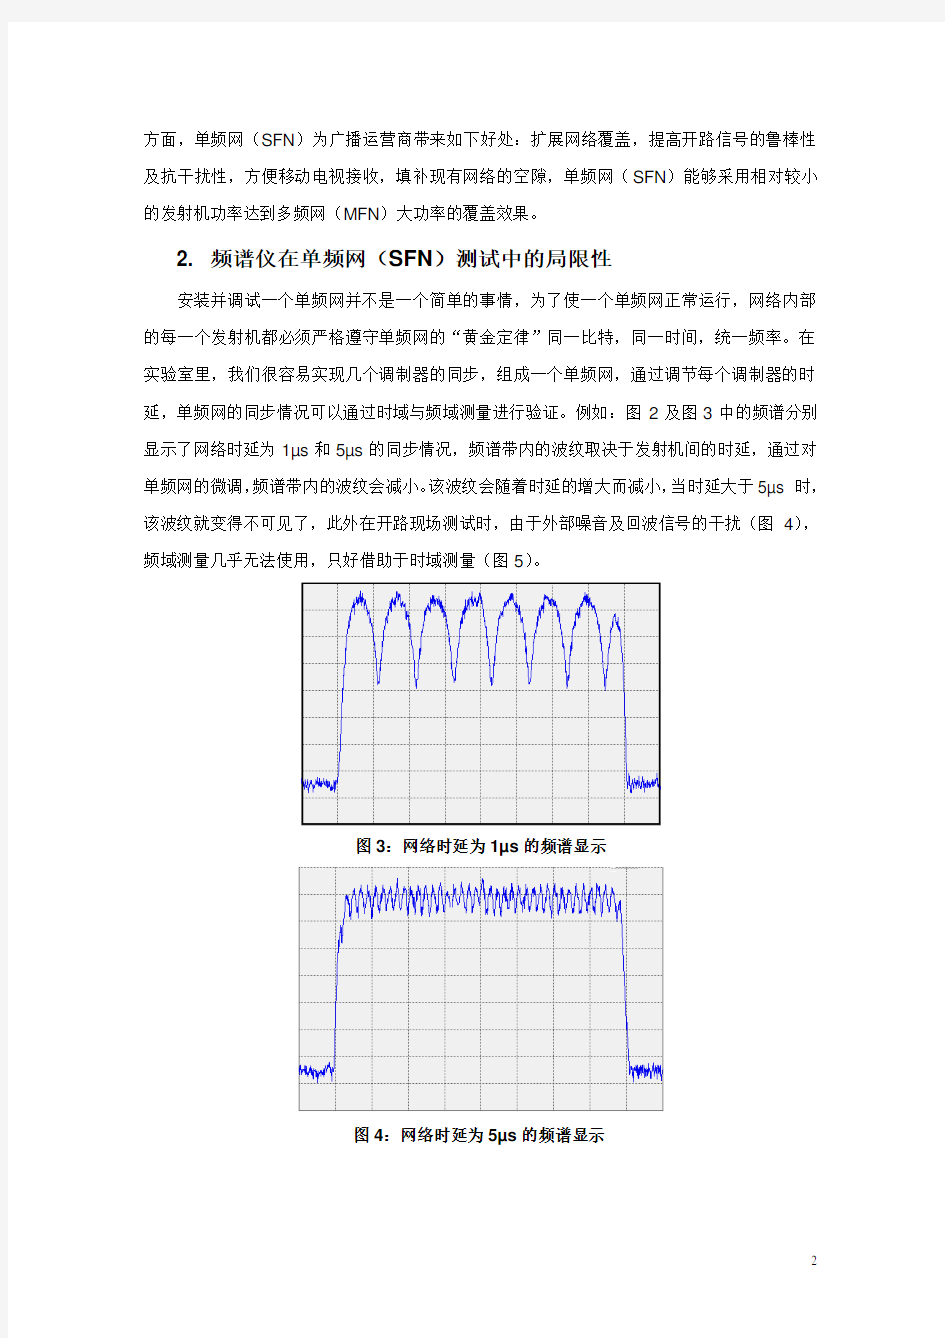 中国地面数字电视标准单频网系统